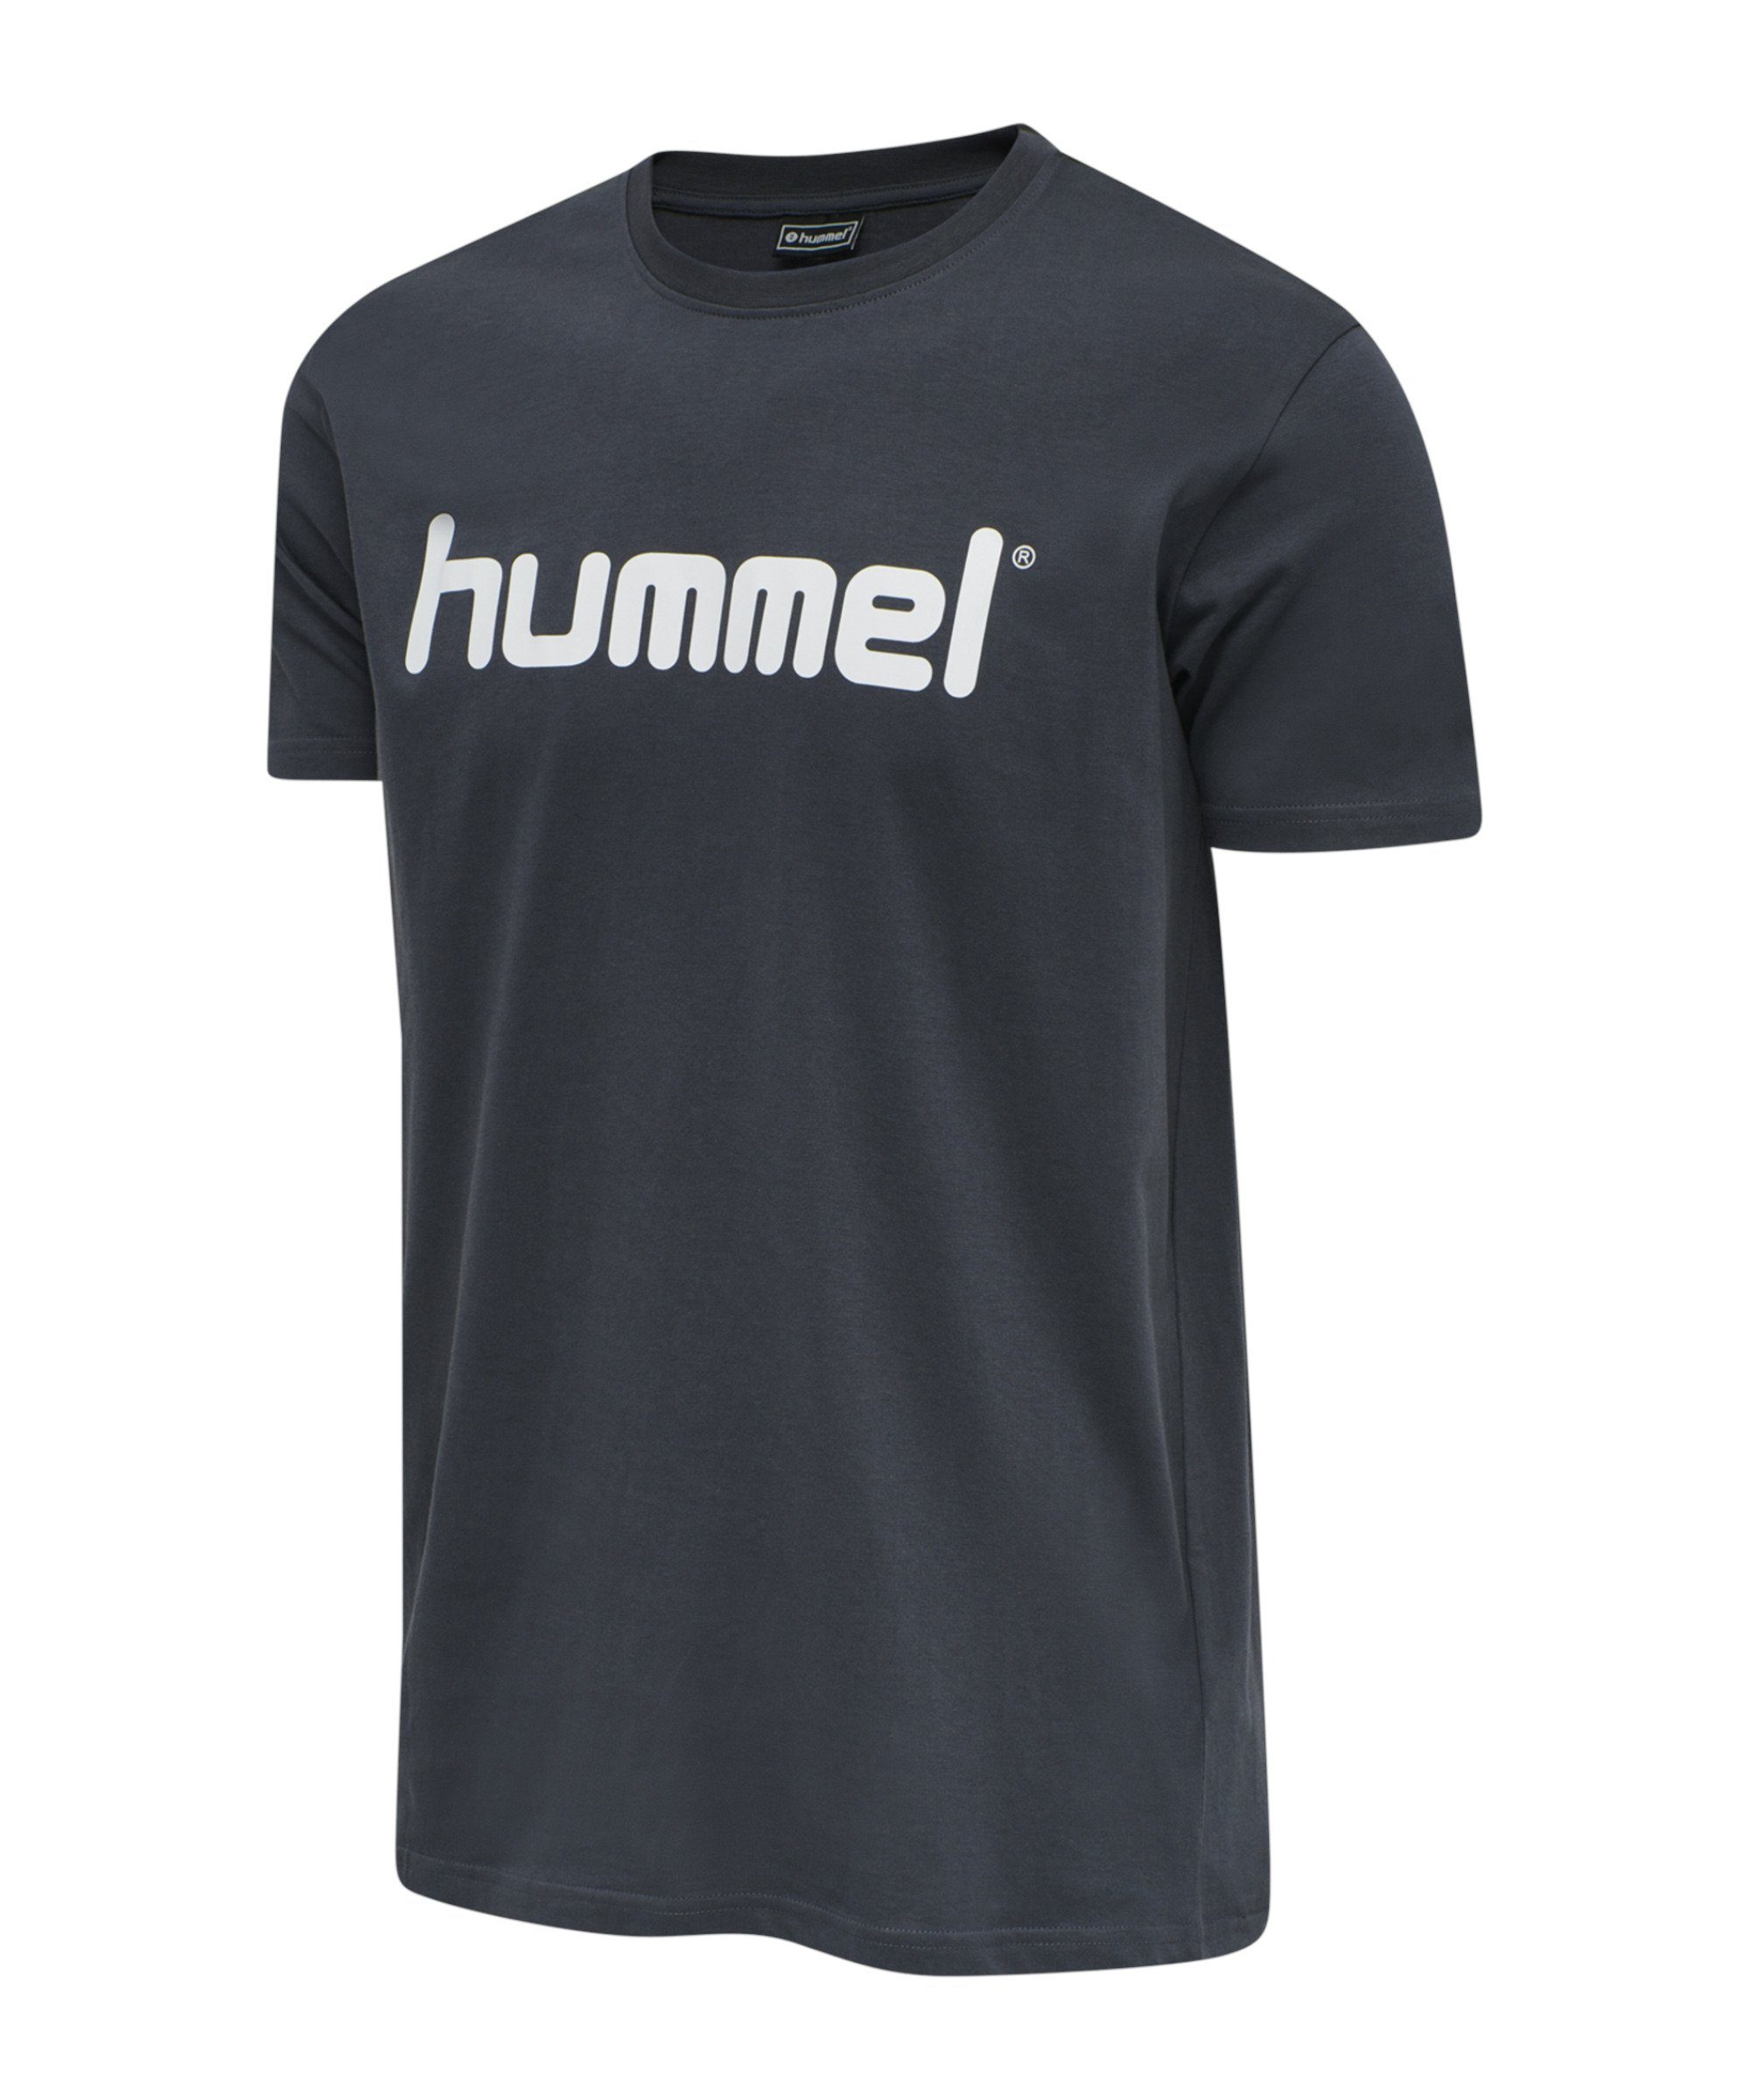 hummel T-Shirt Cotton T-Shirt grau default Logo